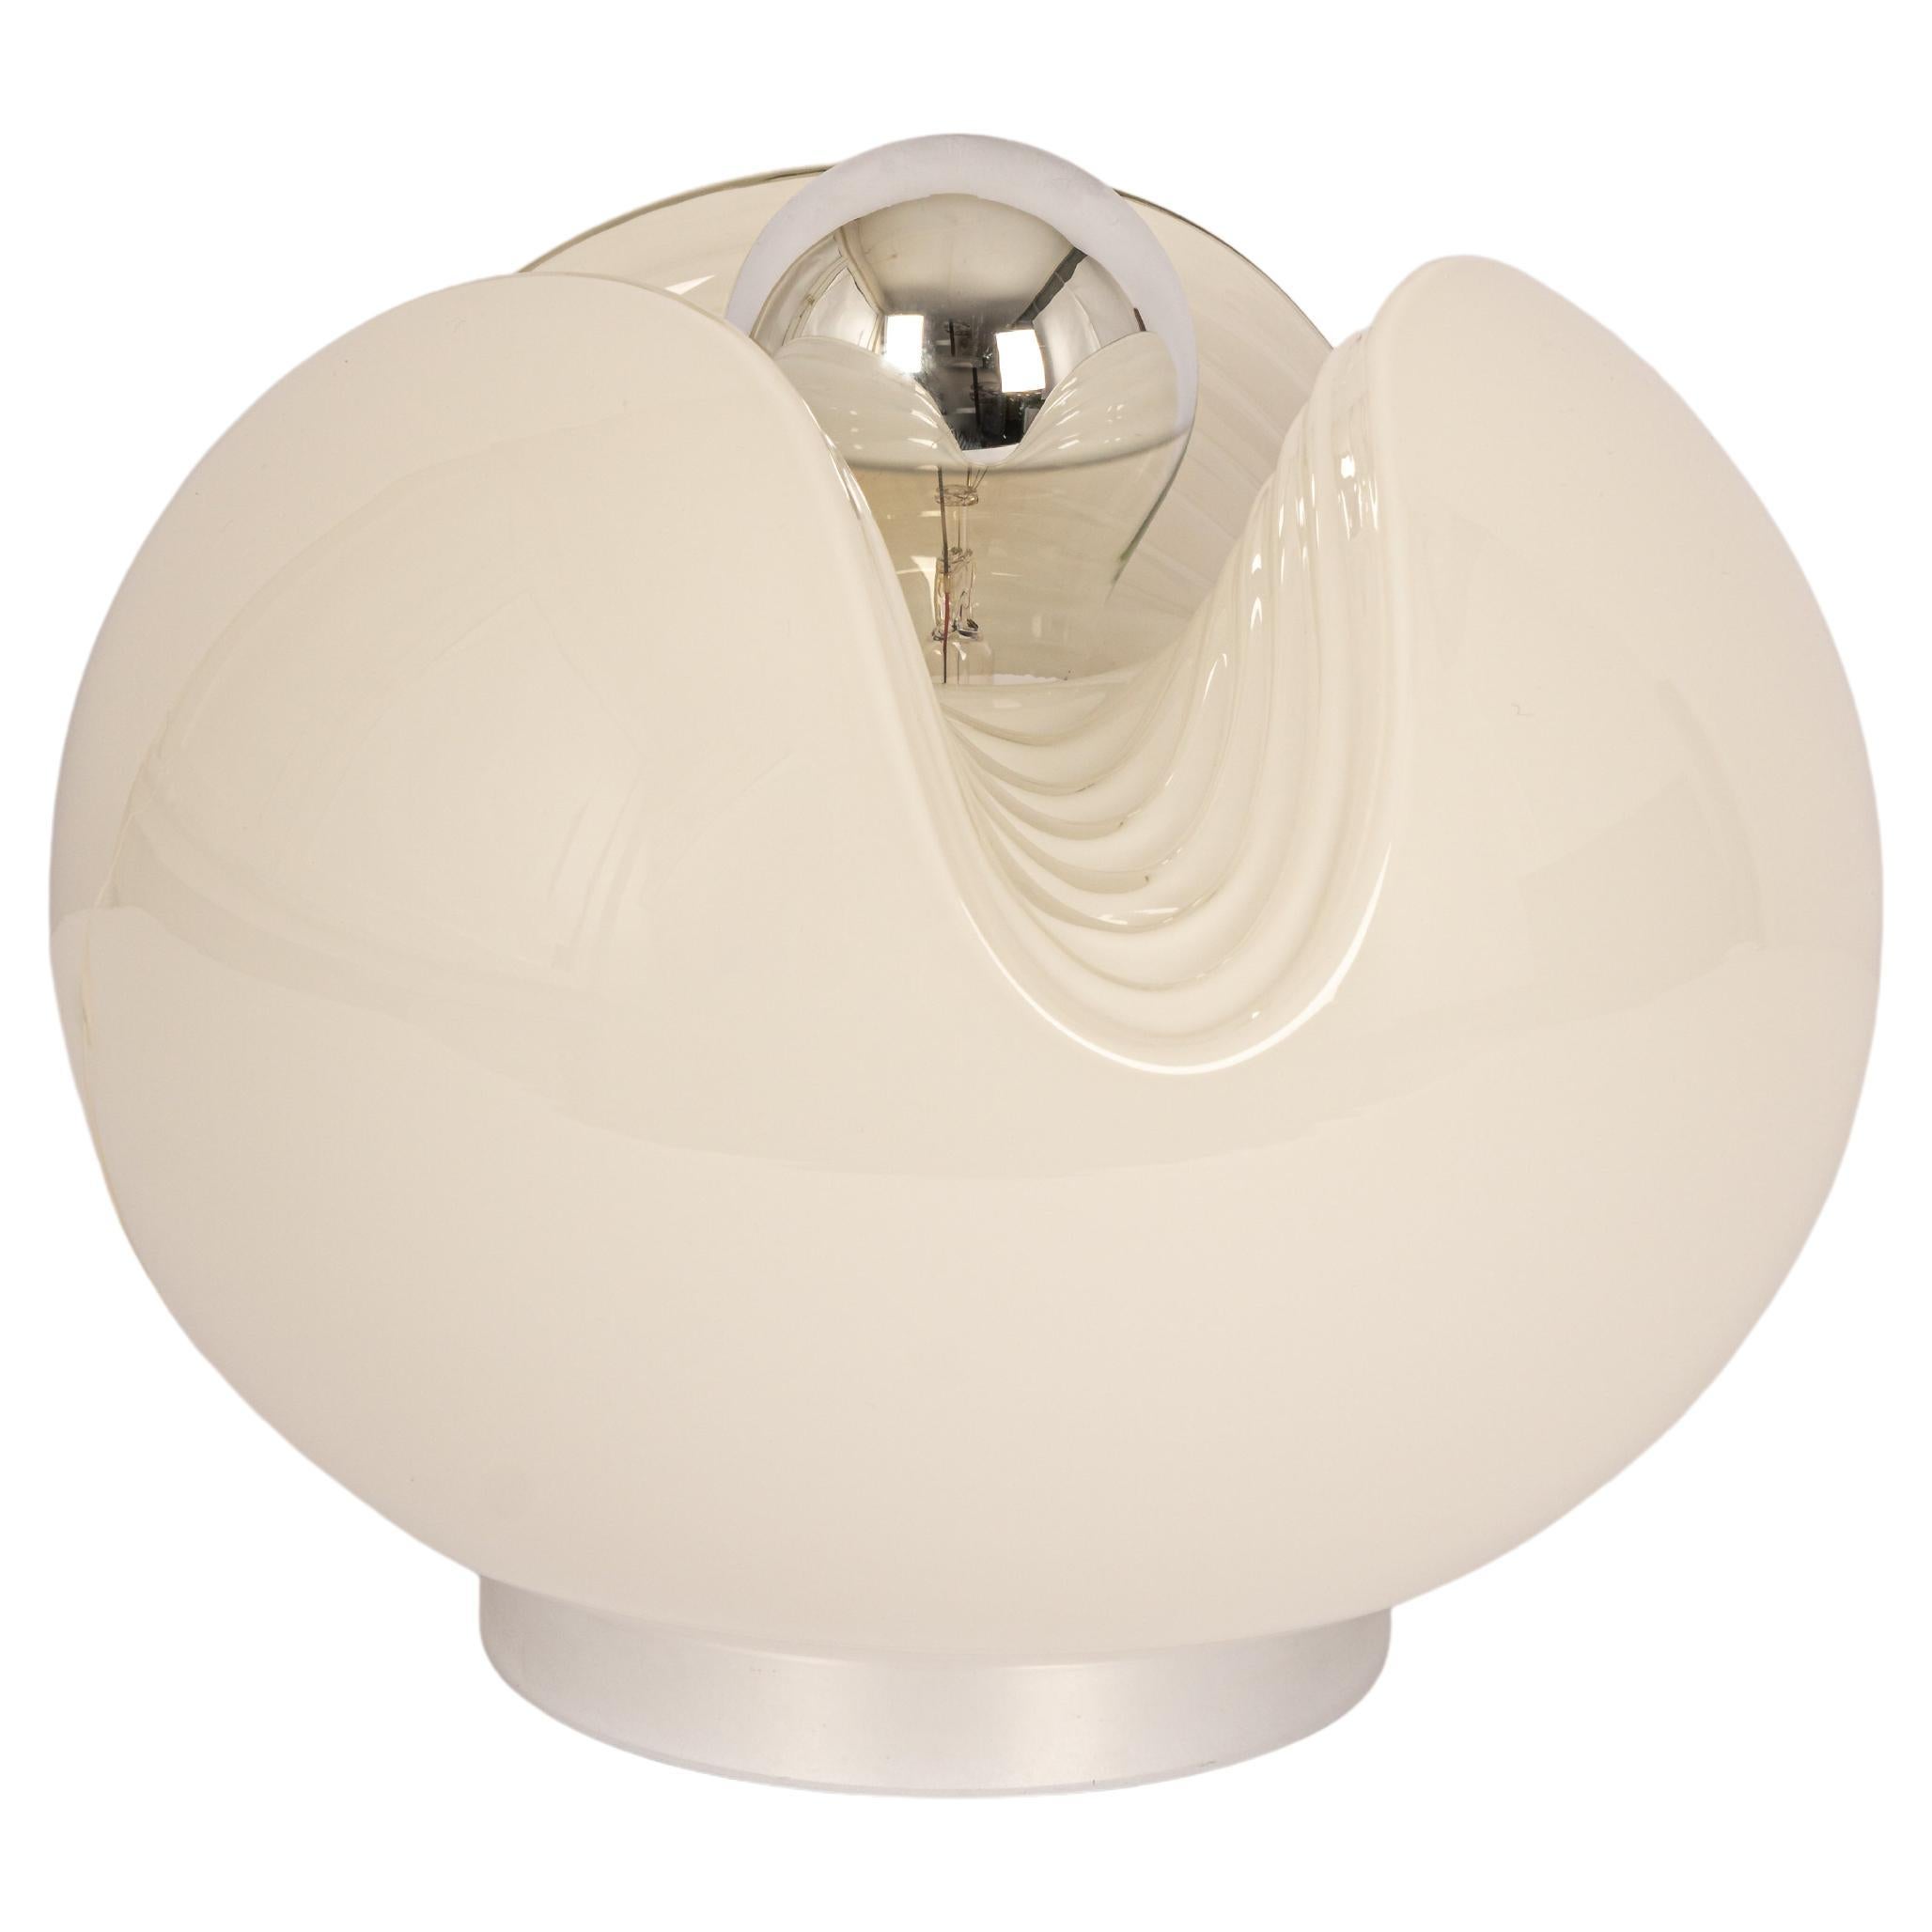 Eine besondere runde biomorphe Opalglas-Tischleuchte, entworfen von Koch & Lowy für Peill & Putzler, hergestellt in Deutschland, ca. 1970er Jahre.

Fassungen: Eine x E27 Standard-Glühbirne. (100 W max)
Glühbirnen sind nicht enthalten. Dieses Gerät